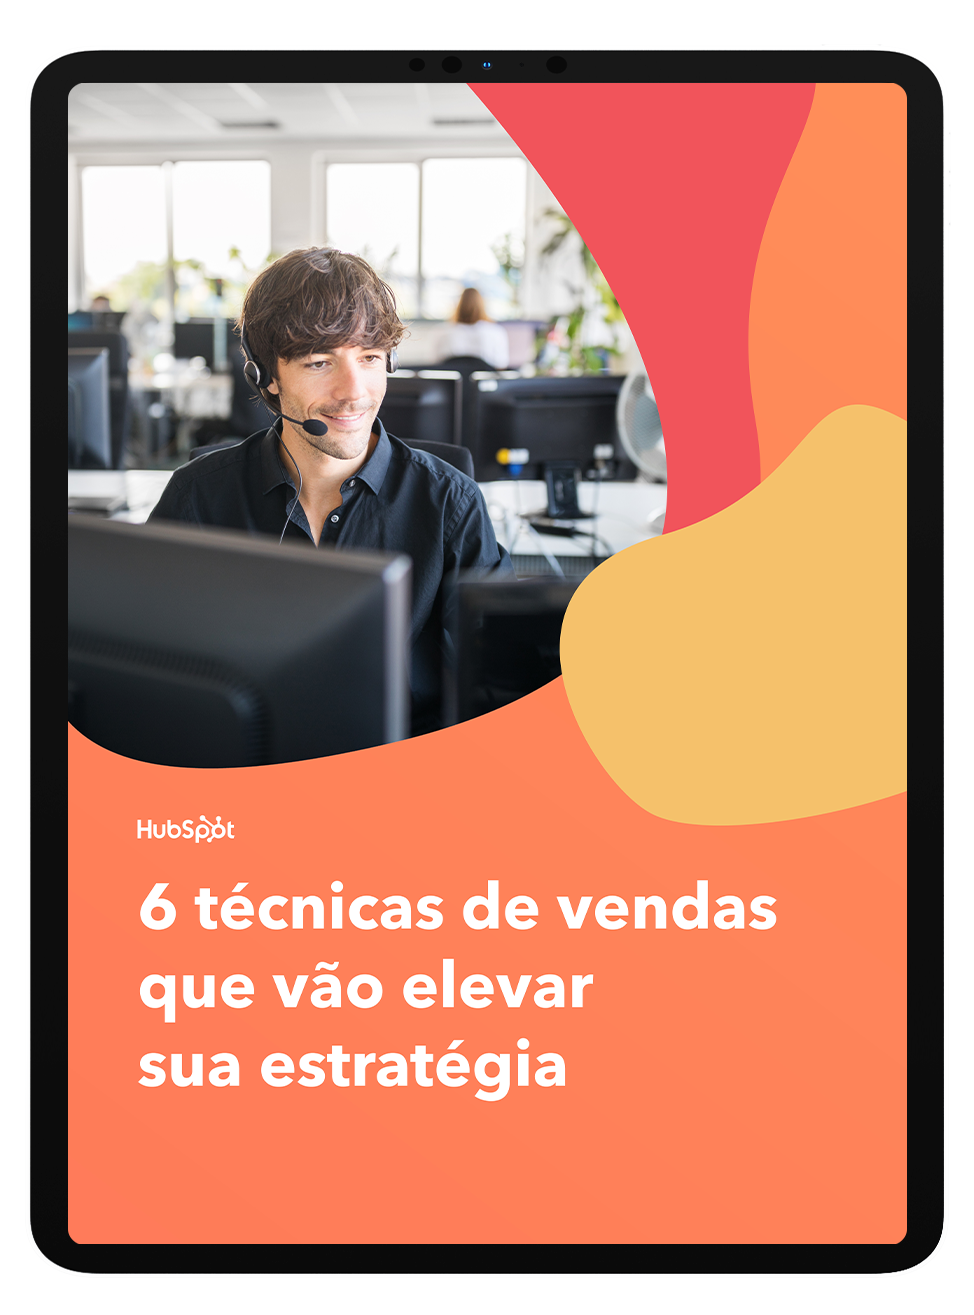 Mockup_tecnicas-de-vendas-elevar-estrategia-ebook